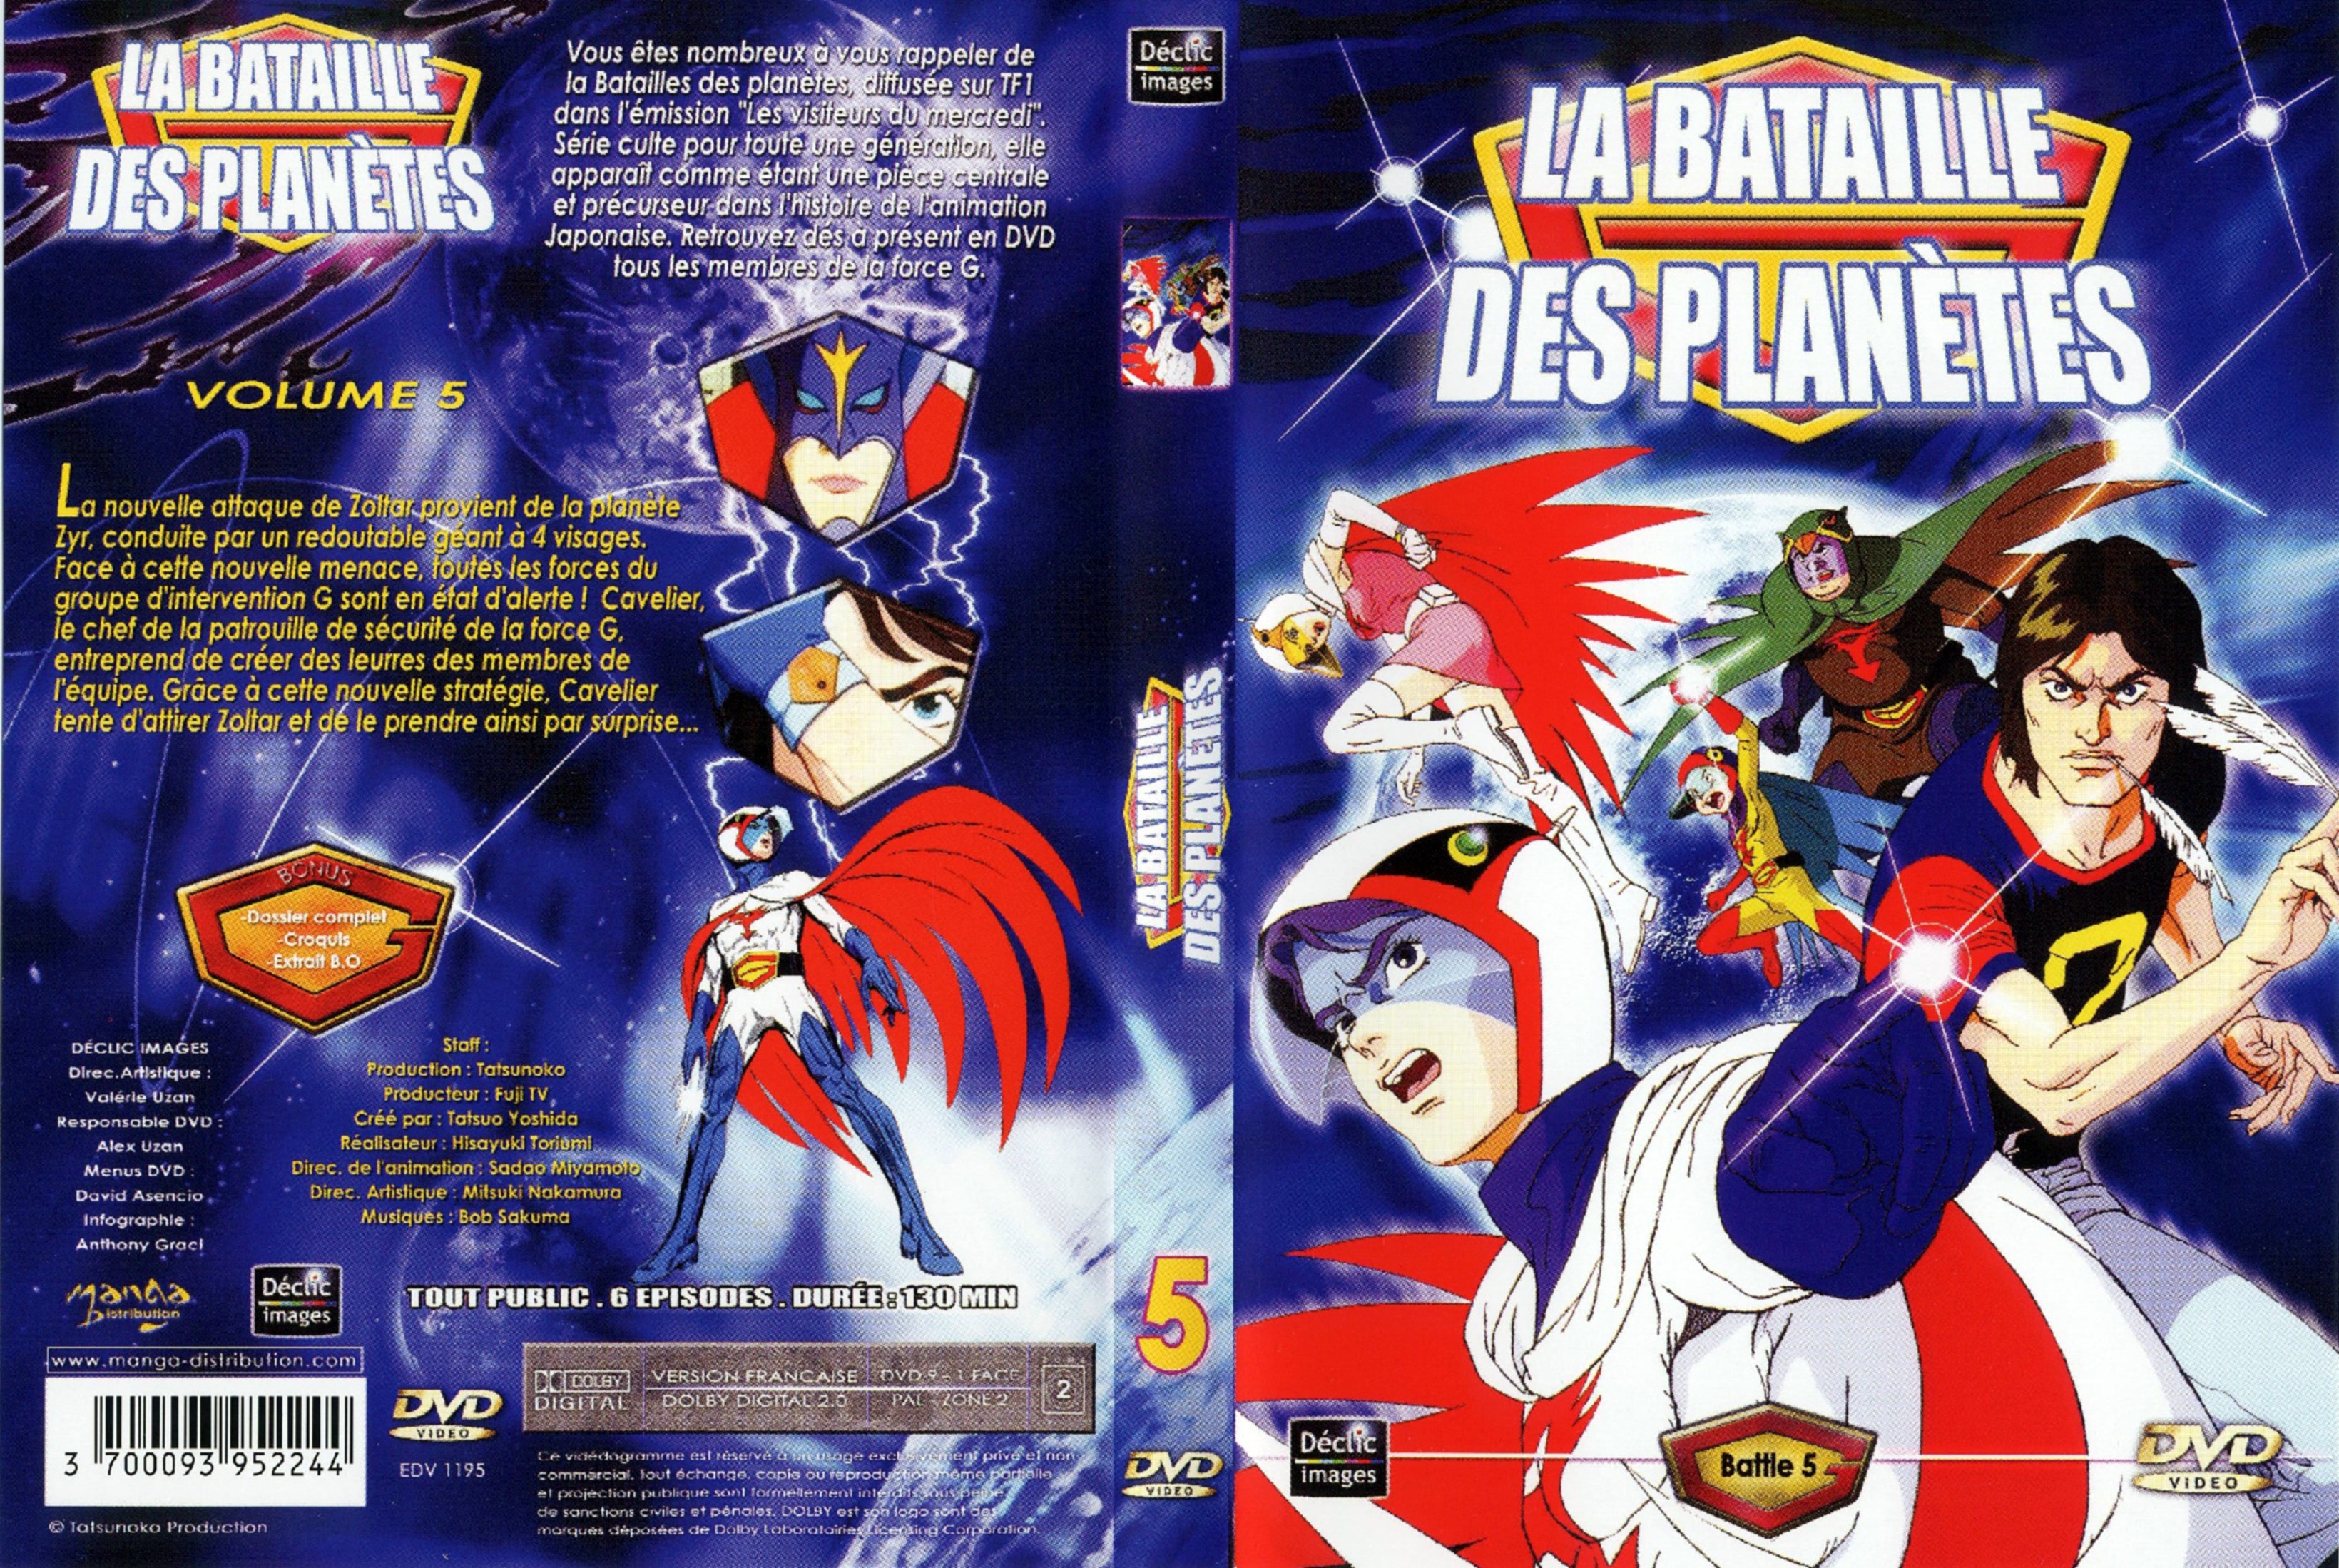 Jaquette DVD La bataille des planetes DVD 05